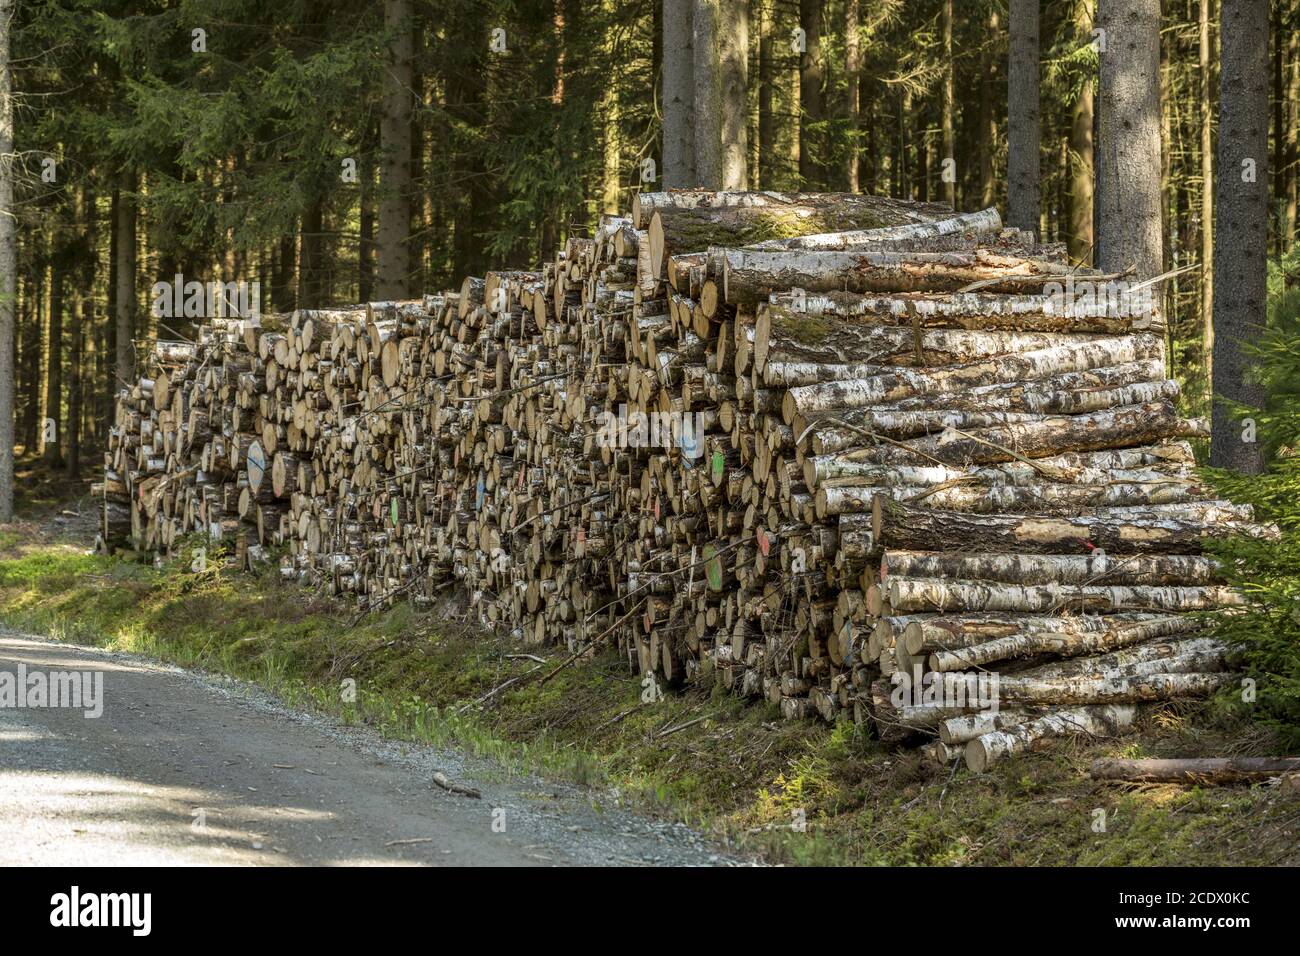 Pile de troncs de bouleau sur une route forestière Banque D'Images